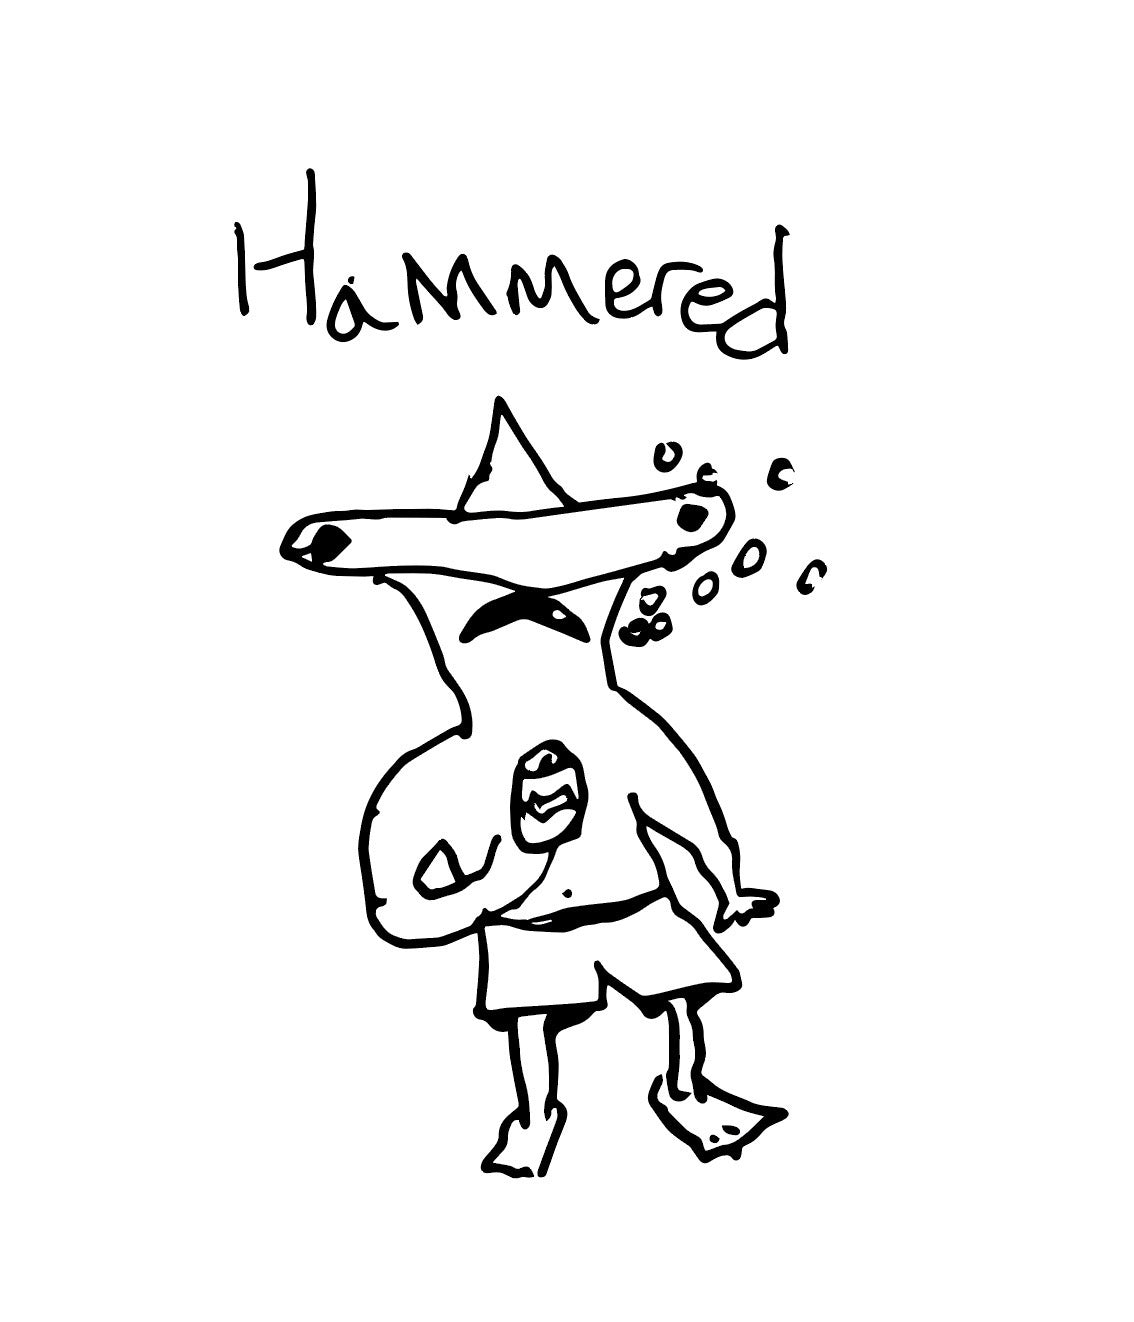 HAMMEREDHEAD SHARK CROP